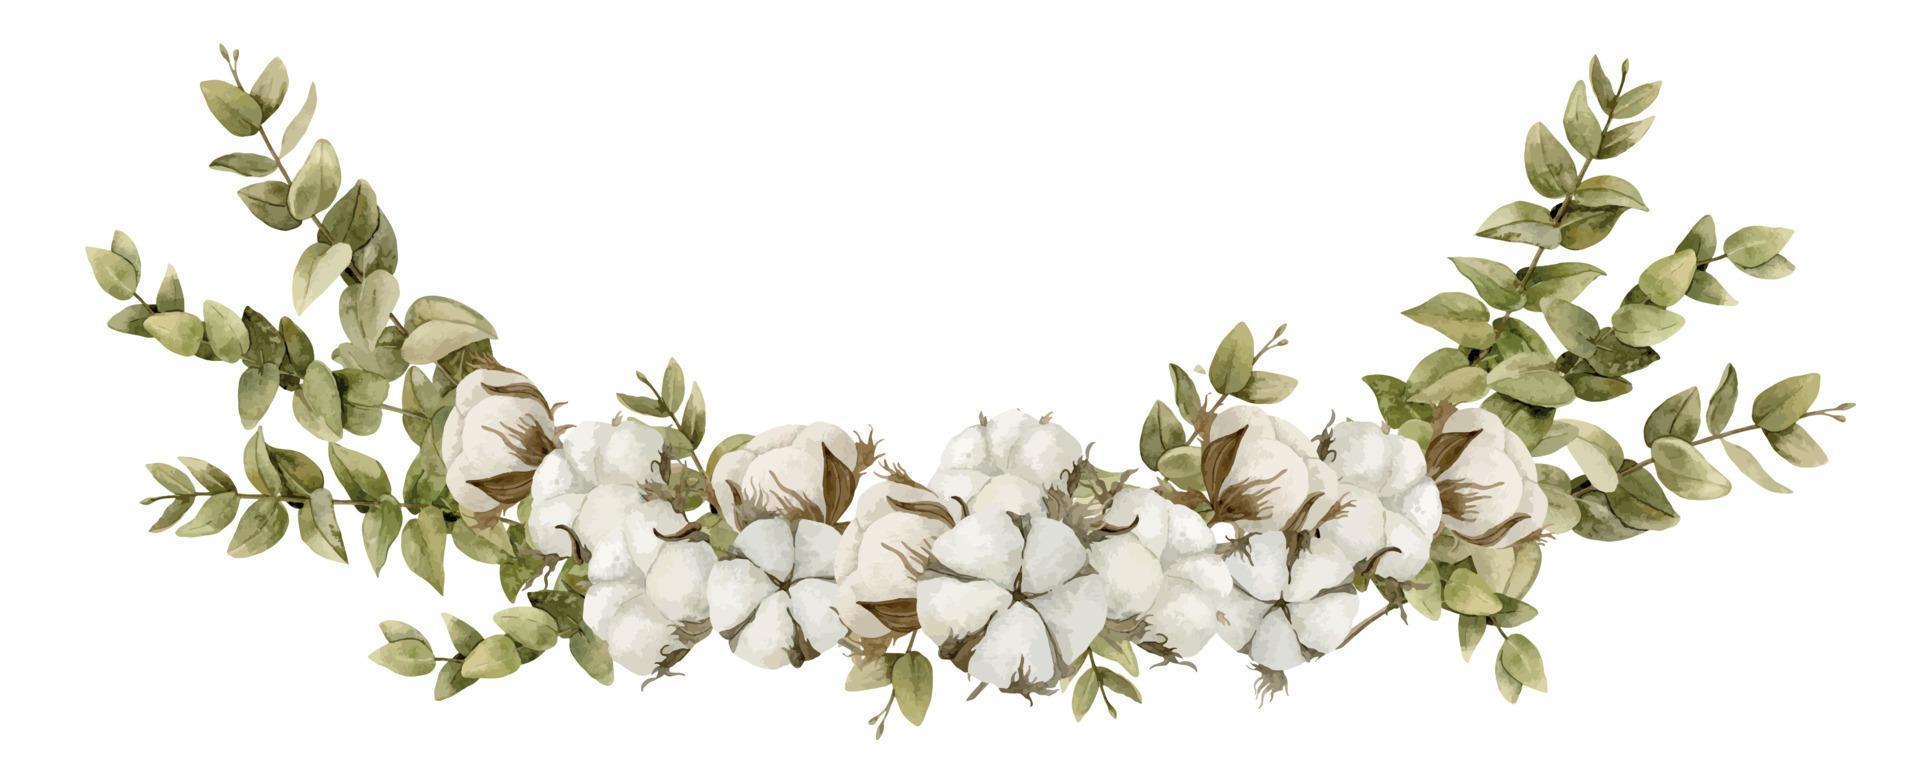 vattenfärg illustration med bomull blomma bollar och grön eukalyptus grenar på isolerat bakgrund. hand dragen blommig sammansättning för hälsning kort eller bröllop inbjudningar i pastell vit färger vektor